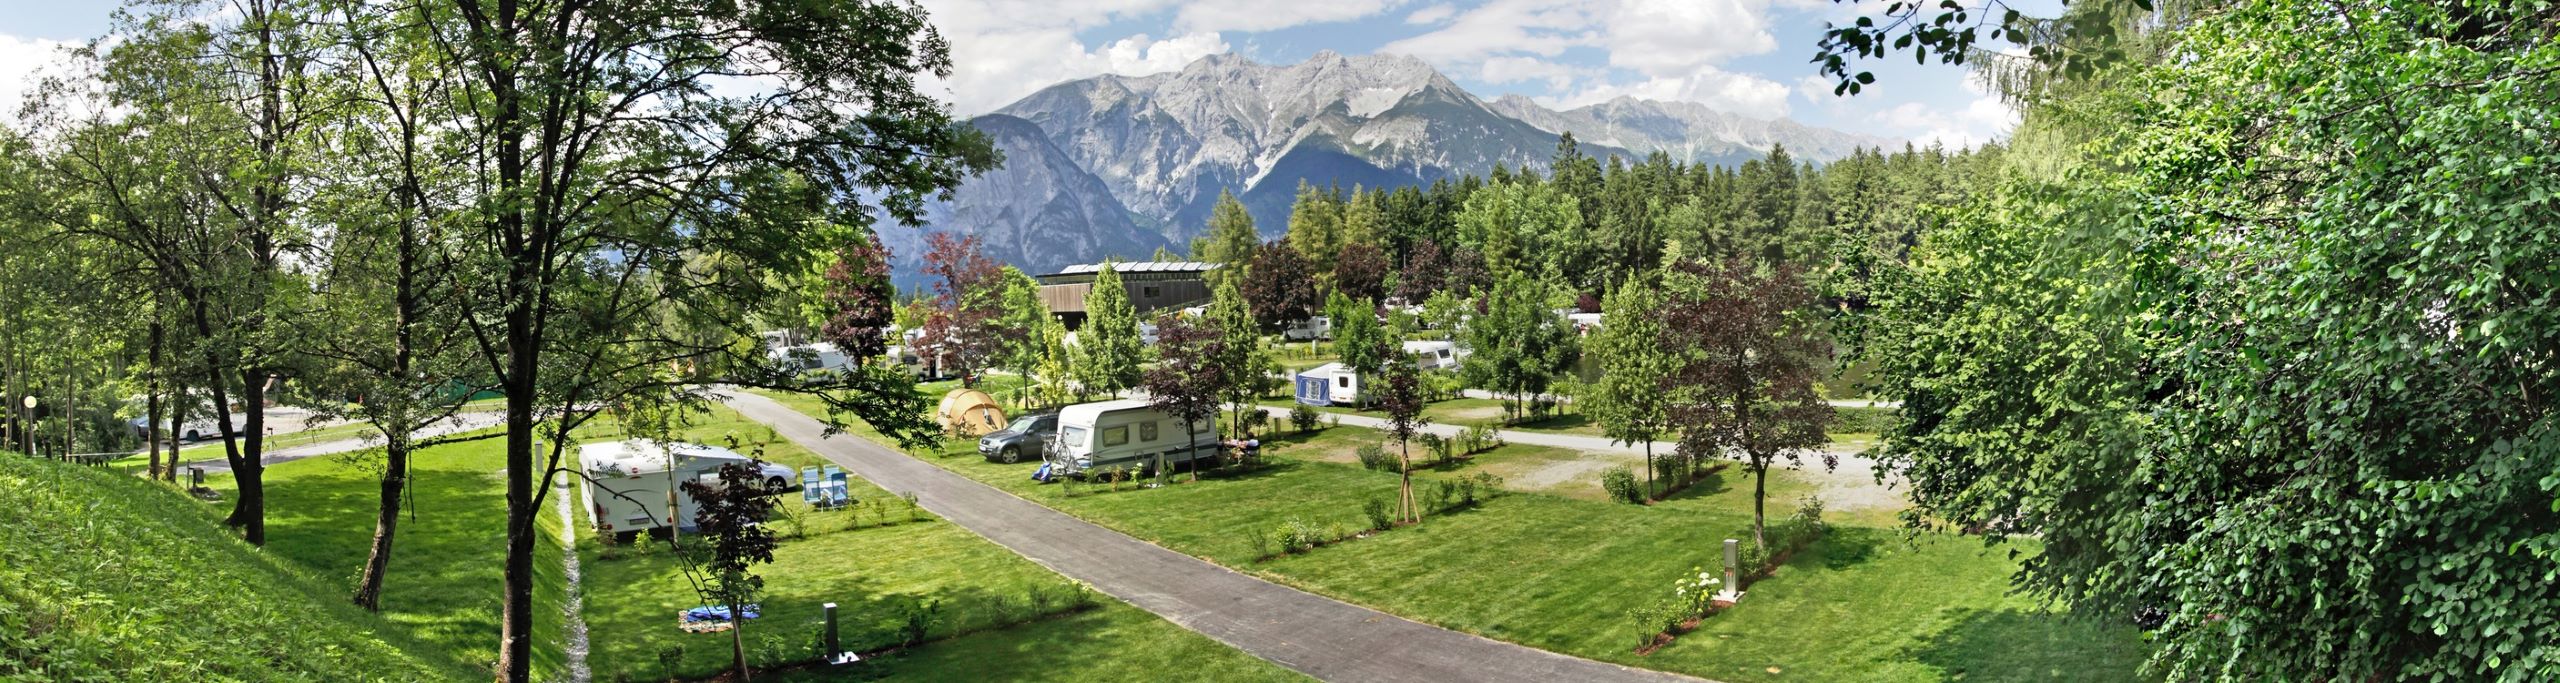 Wohnmobil Magazin - Mit WOBI den richtigen Campingplatz finden